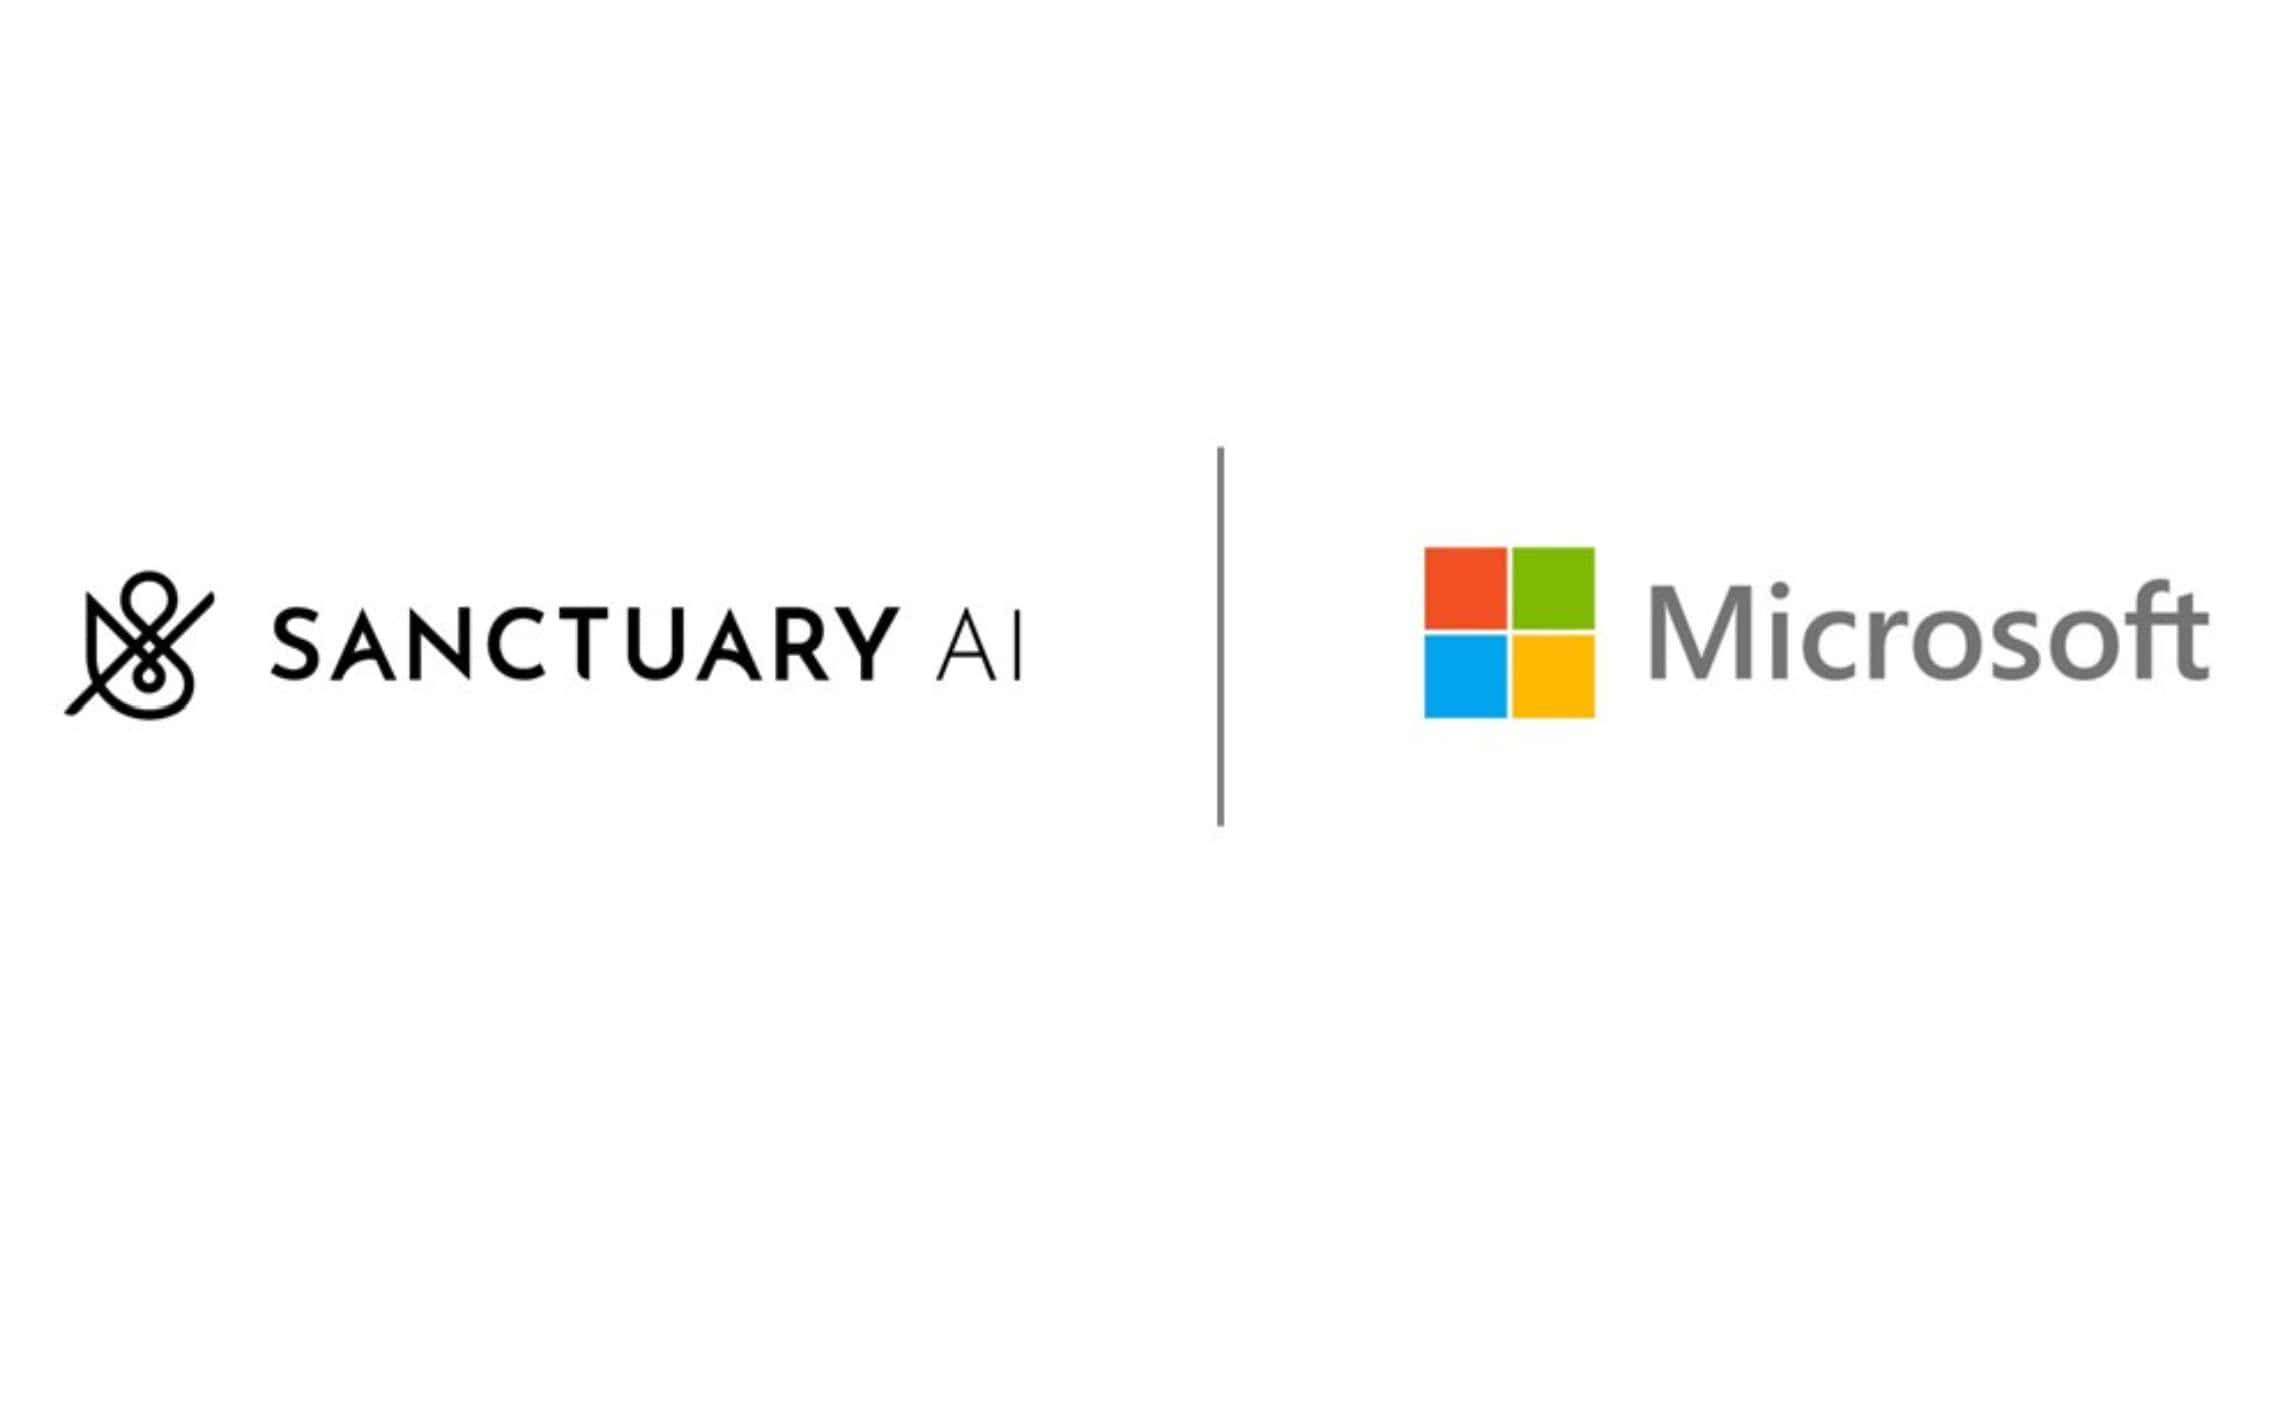 Microsoft Sanctuary AI